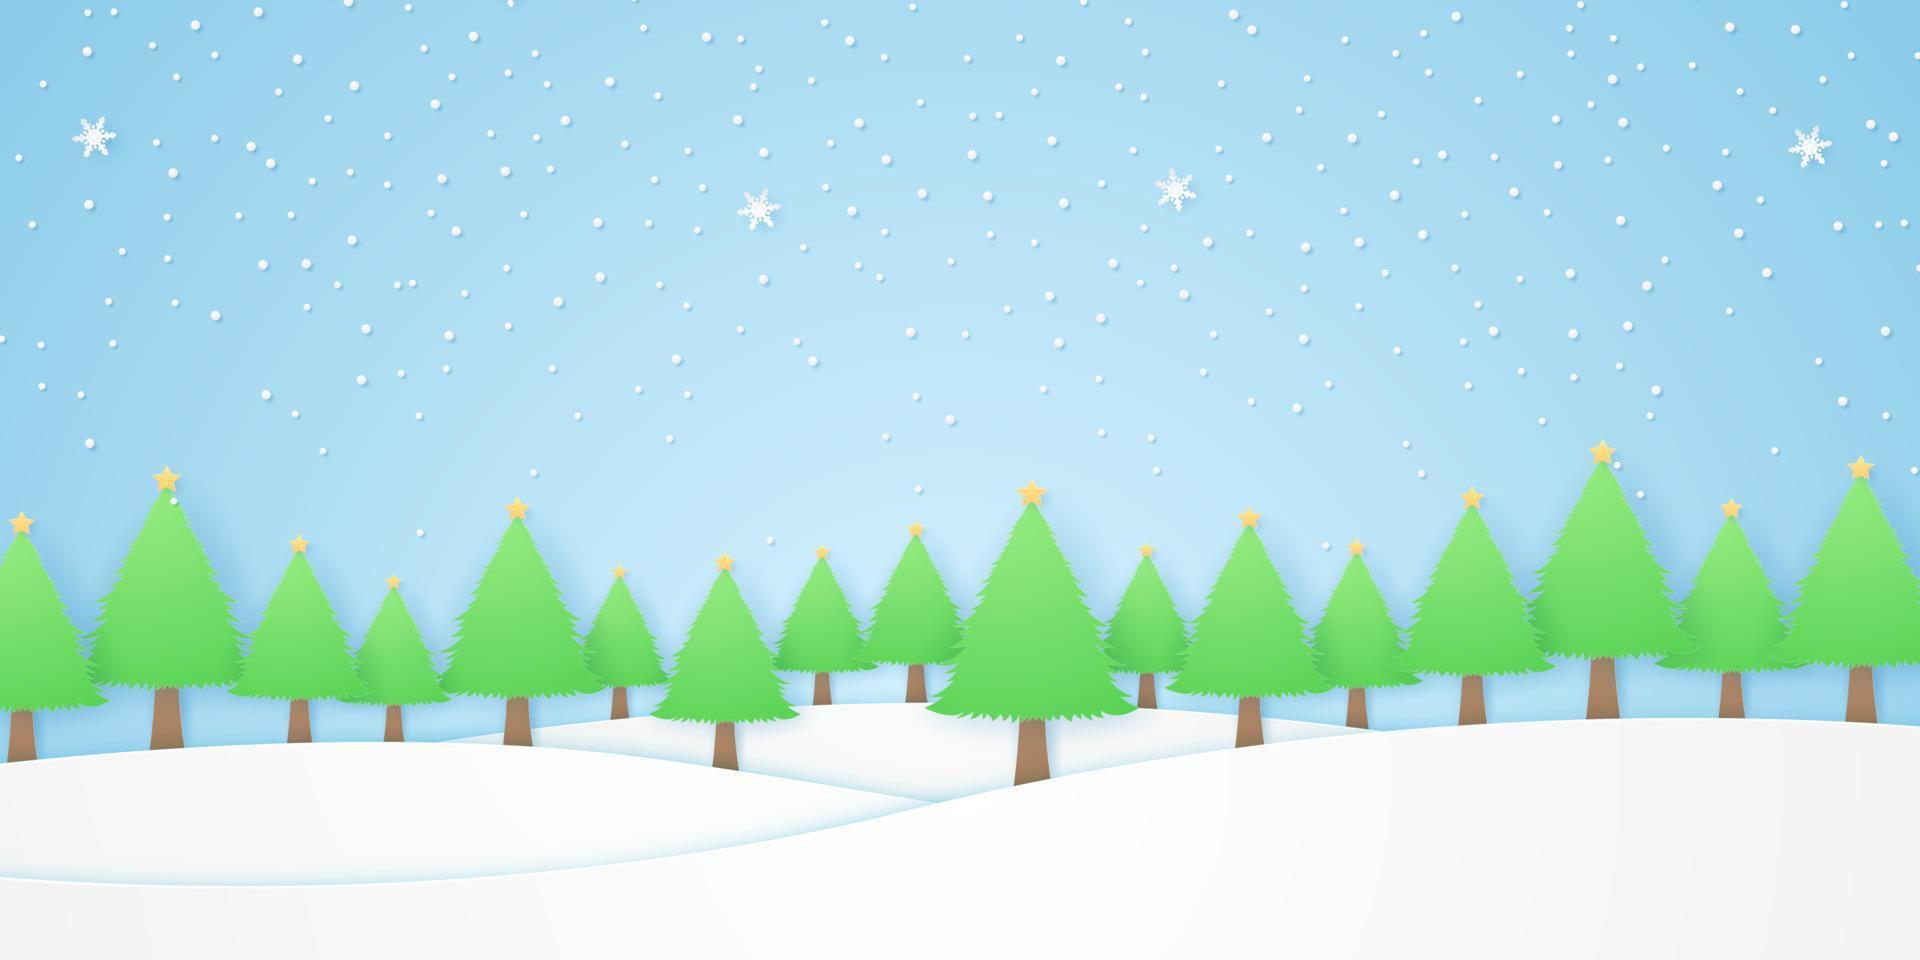 paisagem, árvores com estrelas e neve caindo no inverno, colina branca, estilo de arte em papel vetor